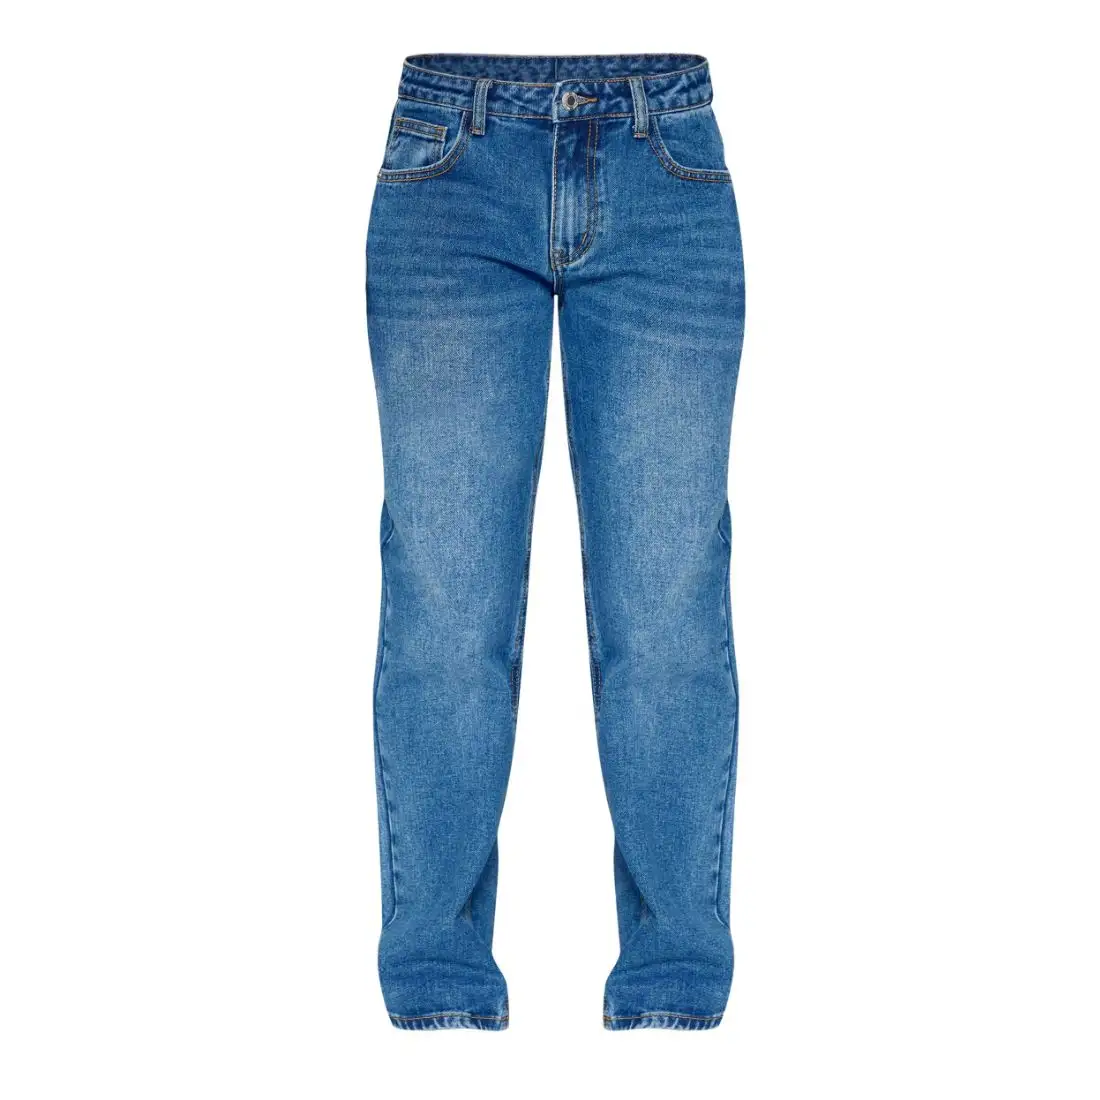 Westliche individuelle Indigo Blue Wash starre niedrige Steigung gerader Bein Jeans Luxus Denim Overall Damen Mama Baggy Hose Großhandel Damenjeans